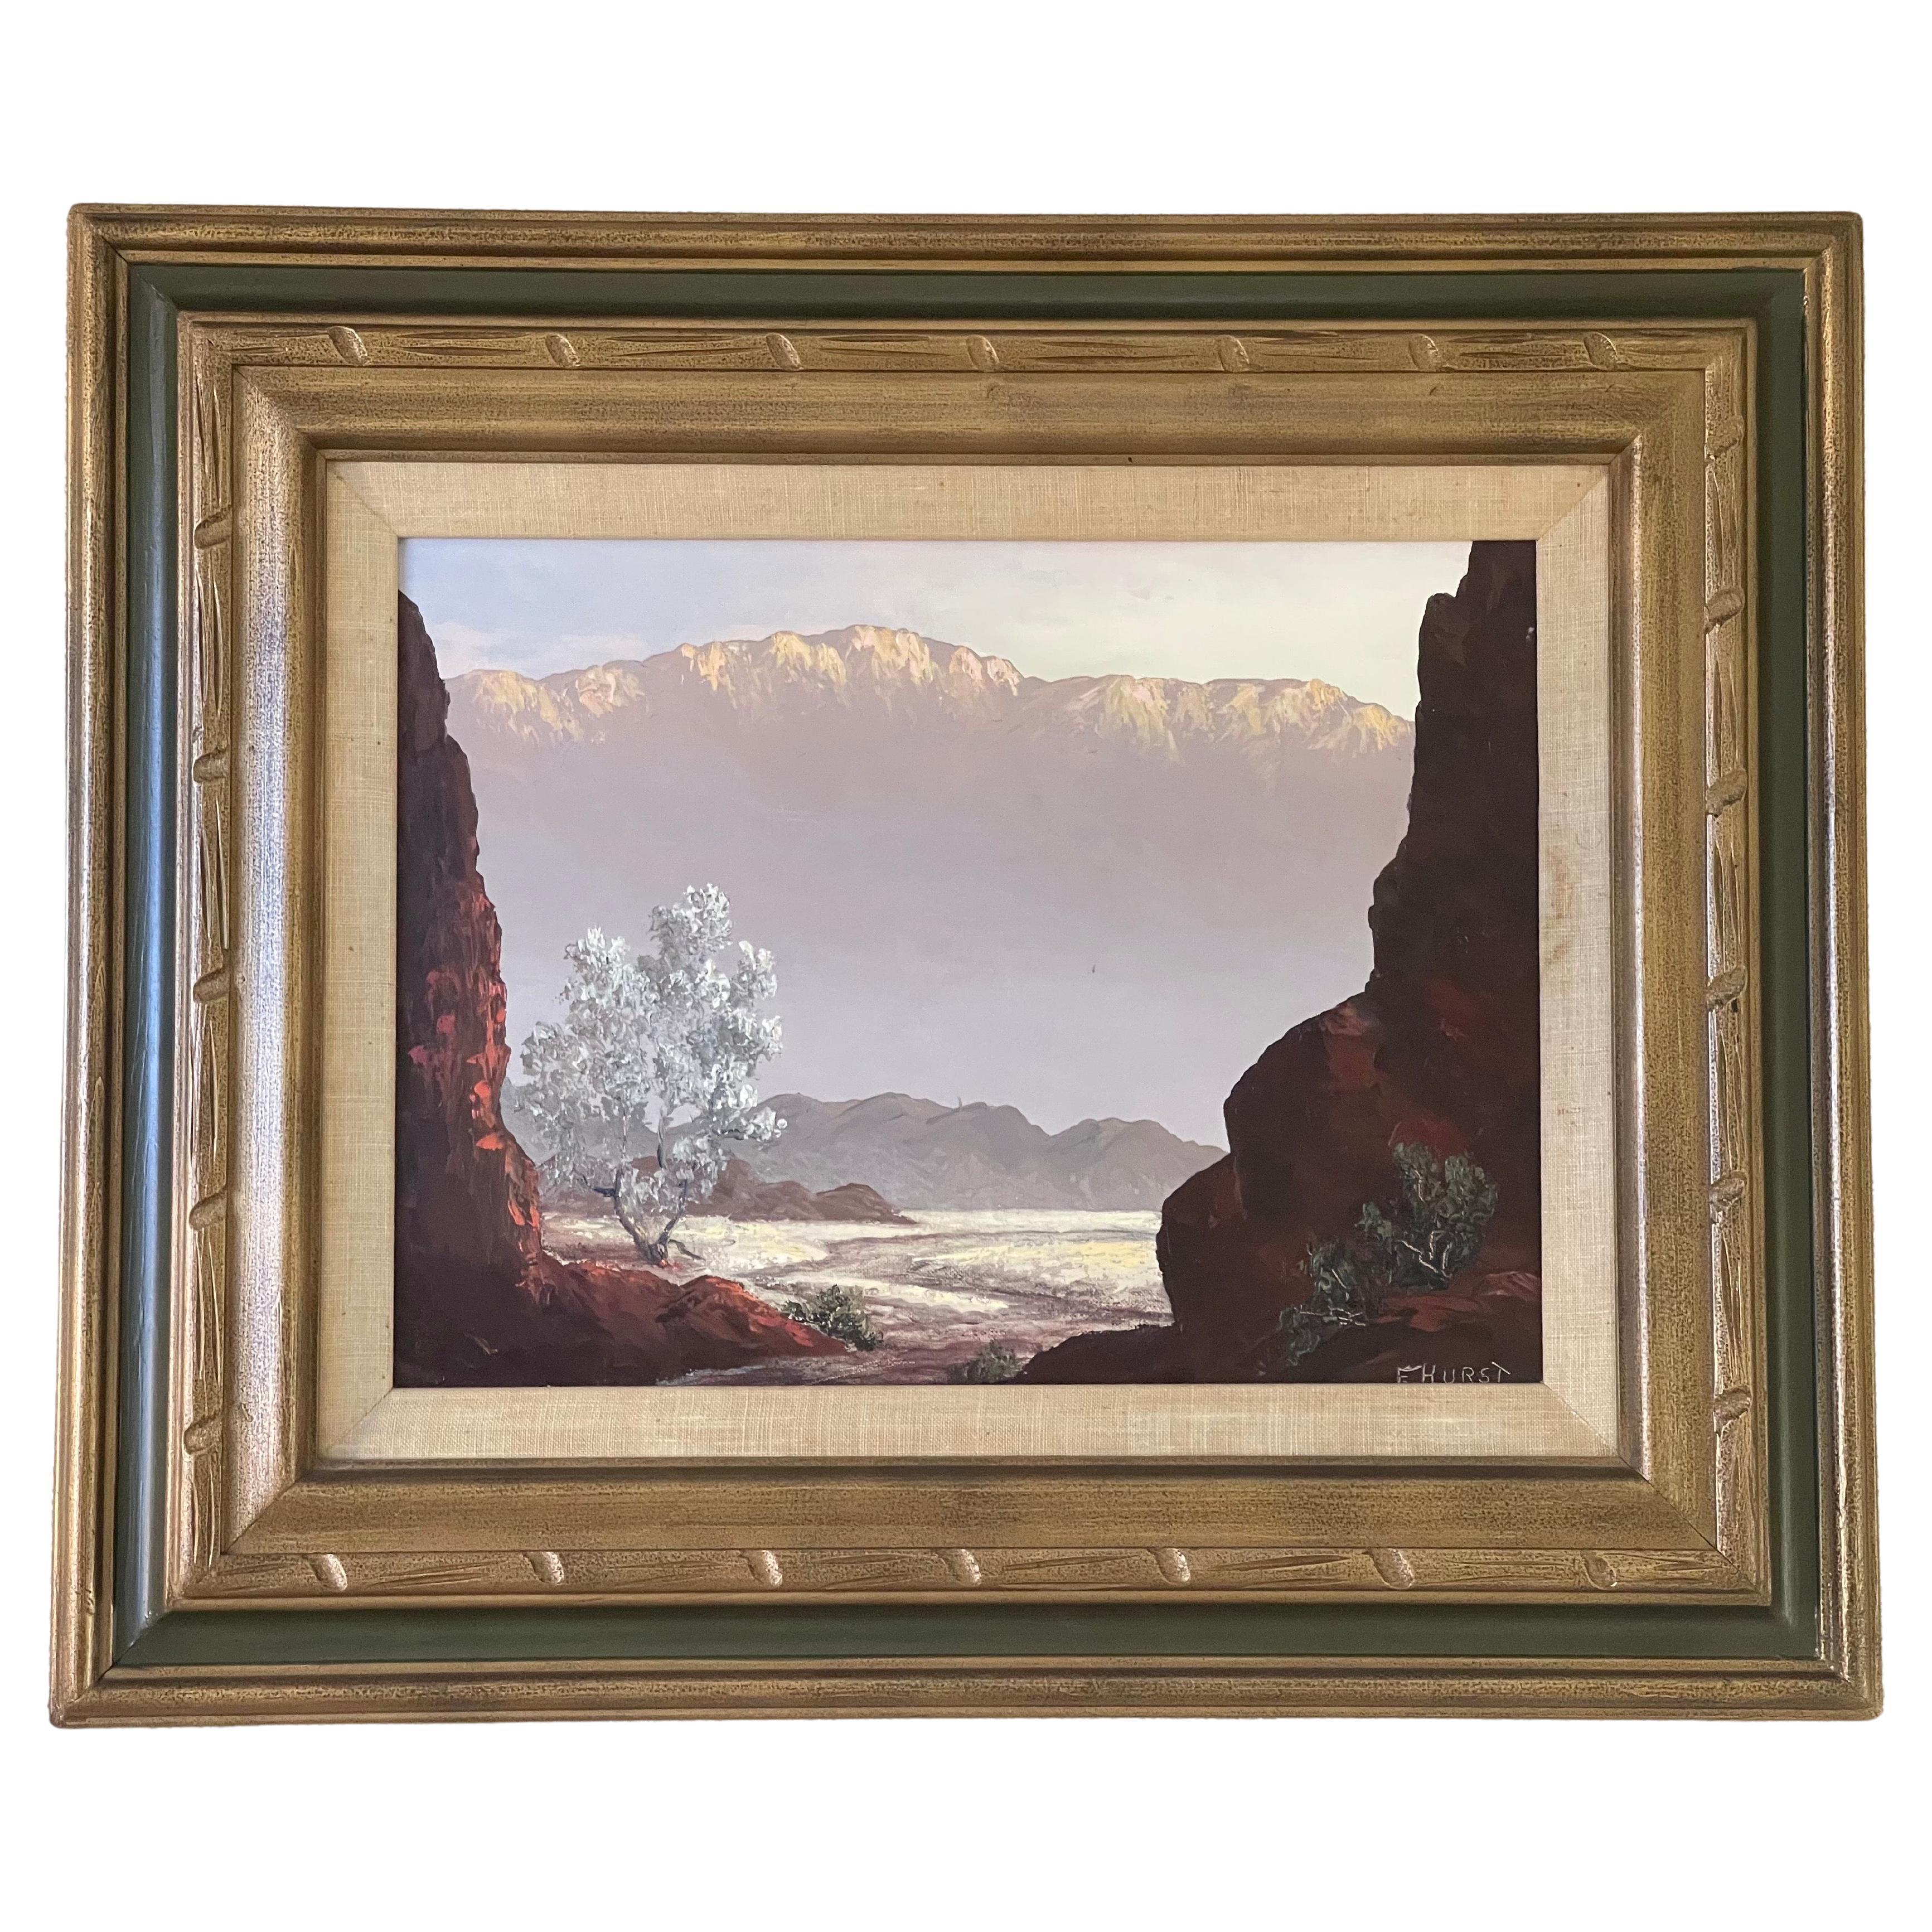 Original Oil on Board Landscape by Martha Eleanor Nicholson Hurst / Wyeth